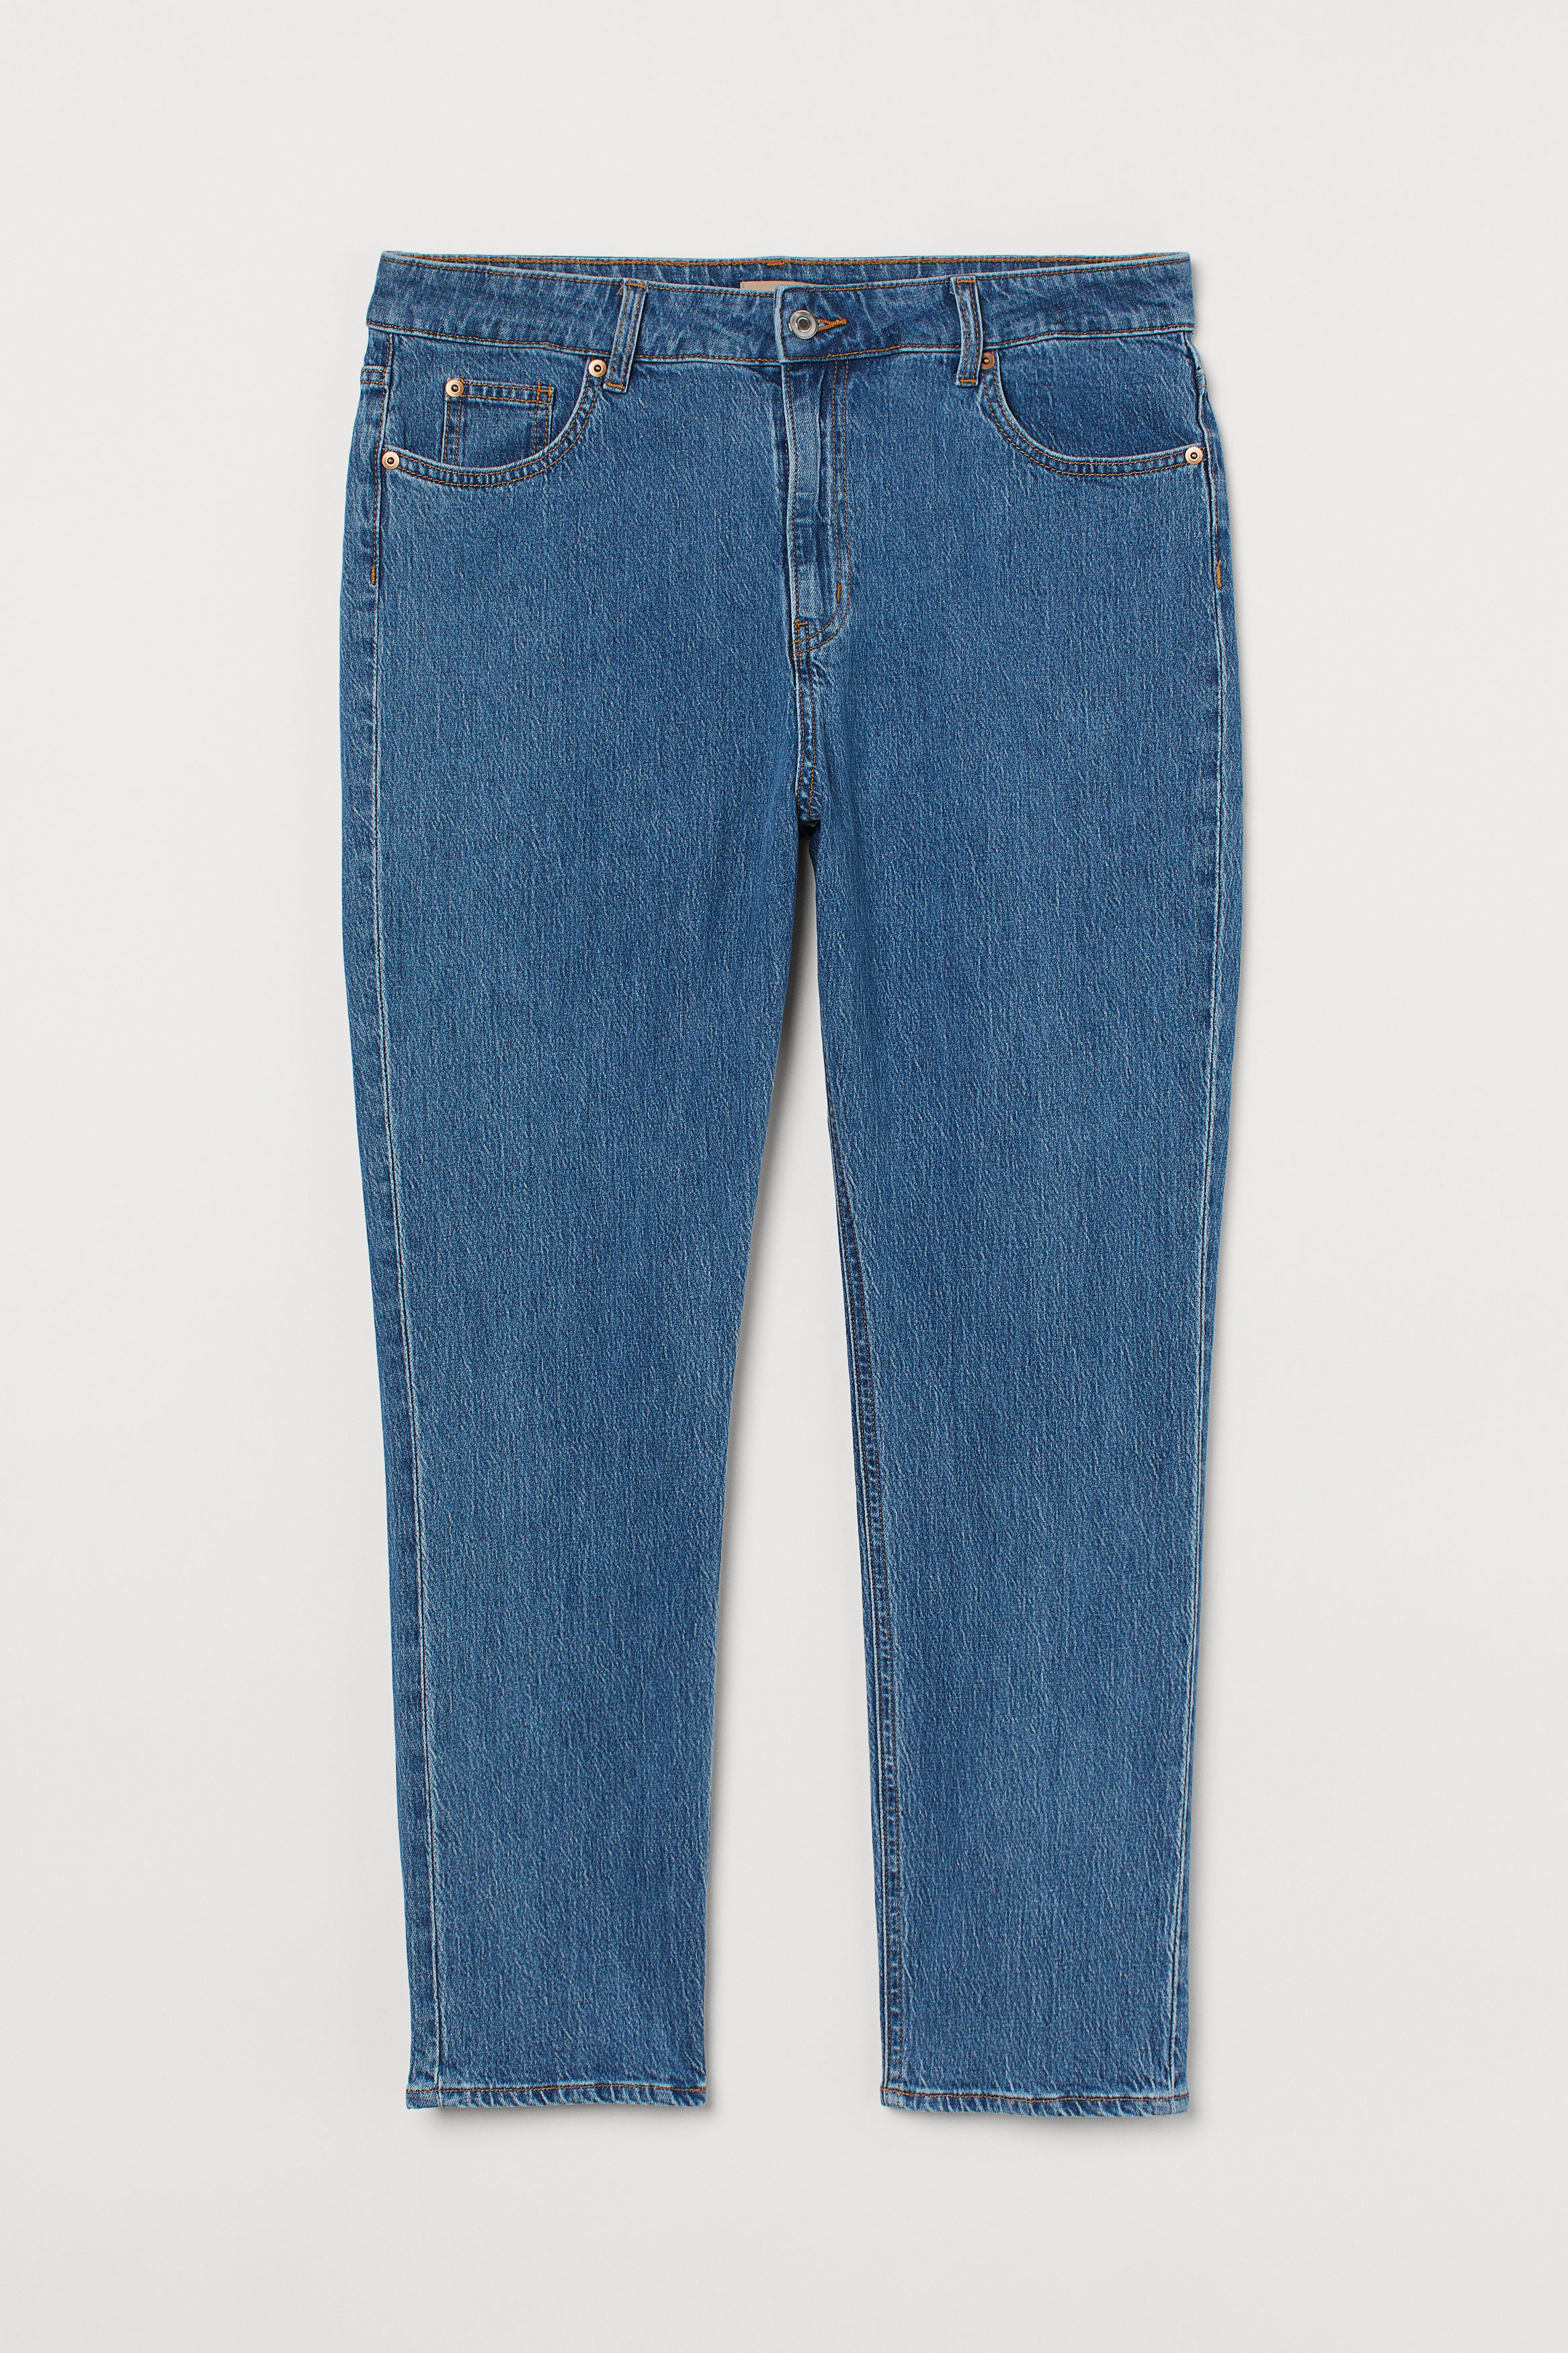 Billede af H&m+ Slim High Ankle Jeans Denimblå, Skinny jeans. Farve: Denim blue I størrelse 4XL